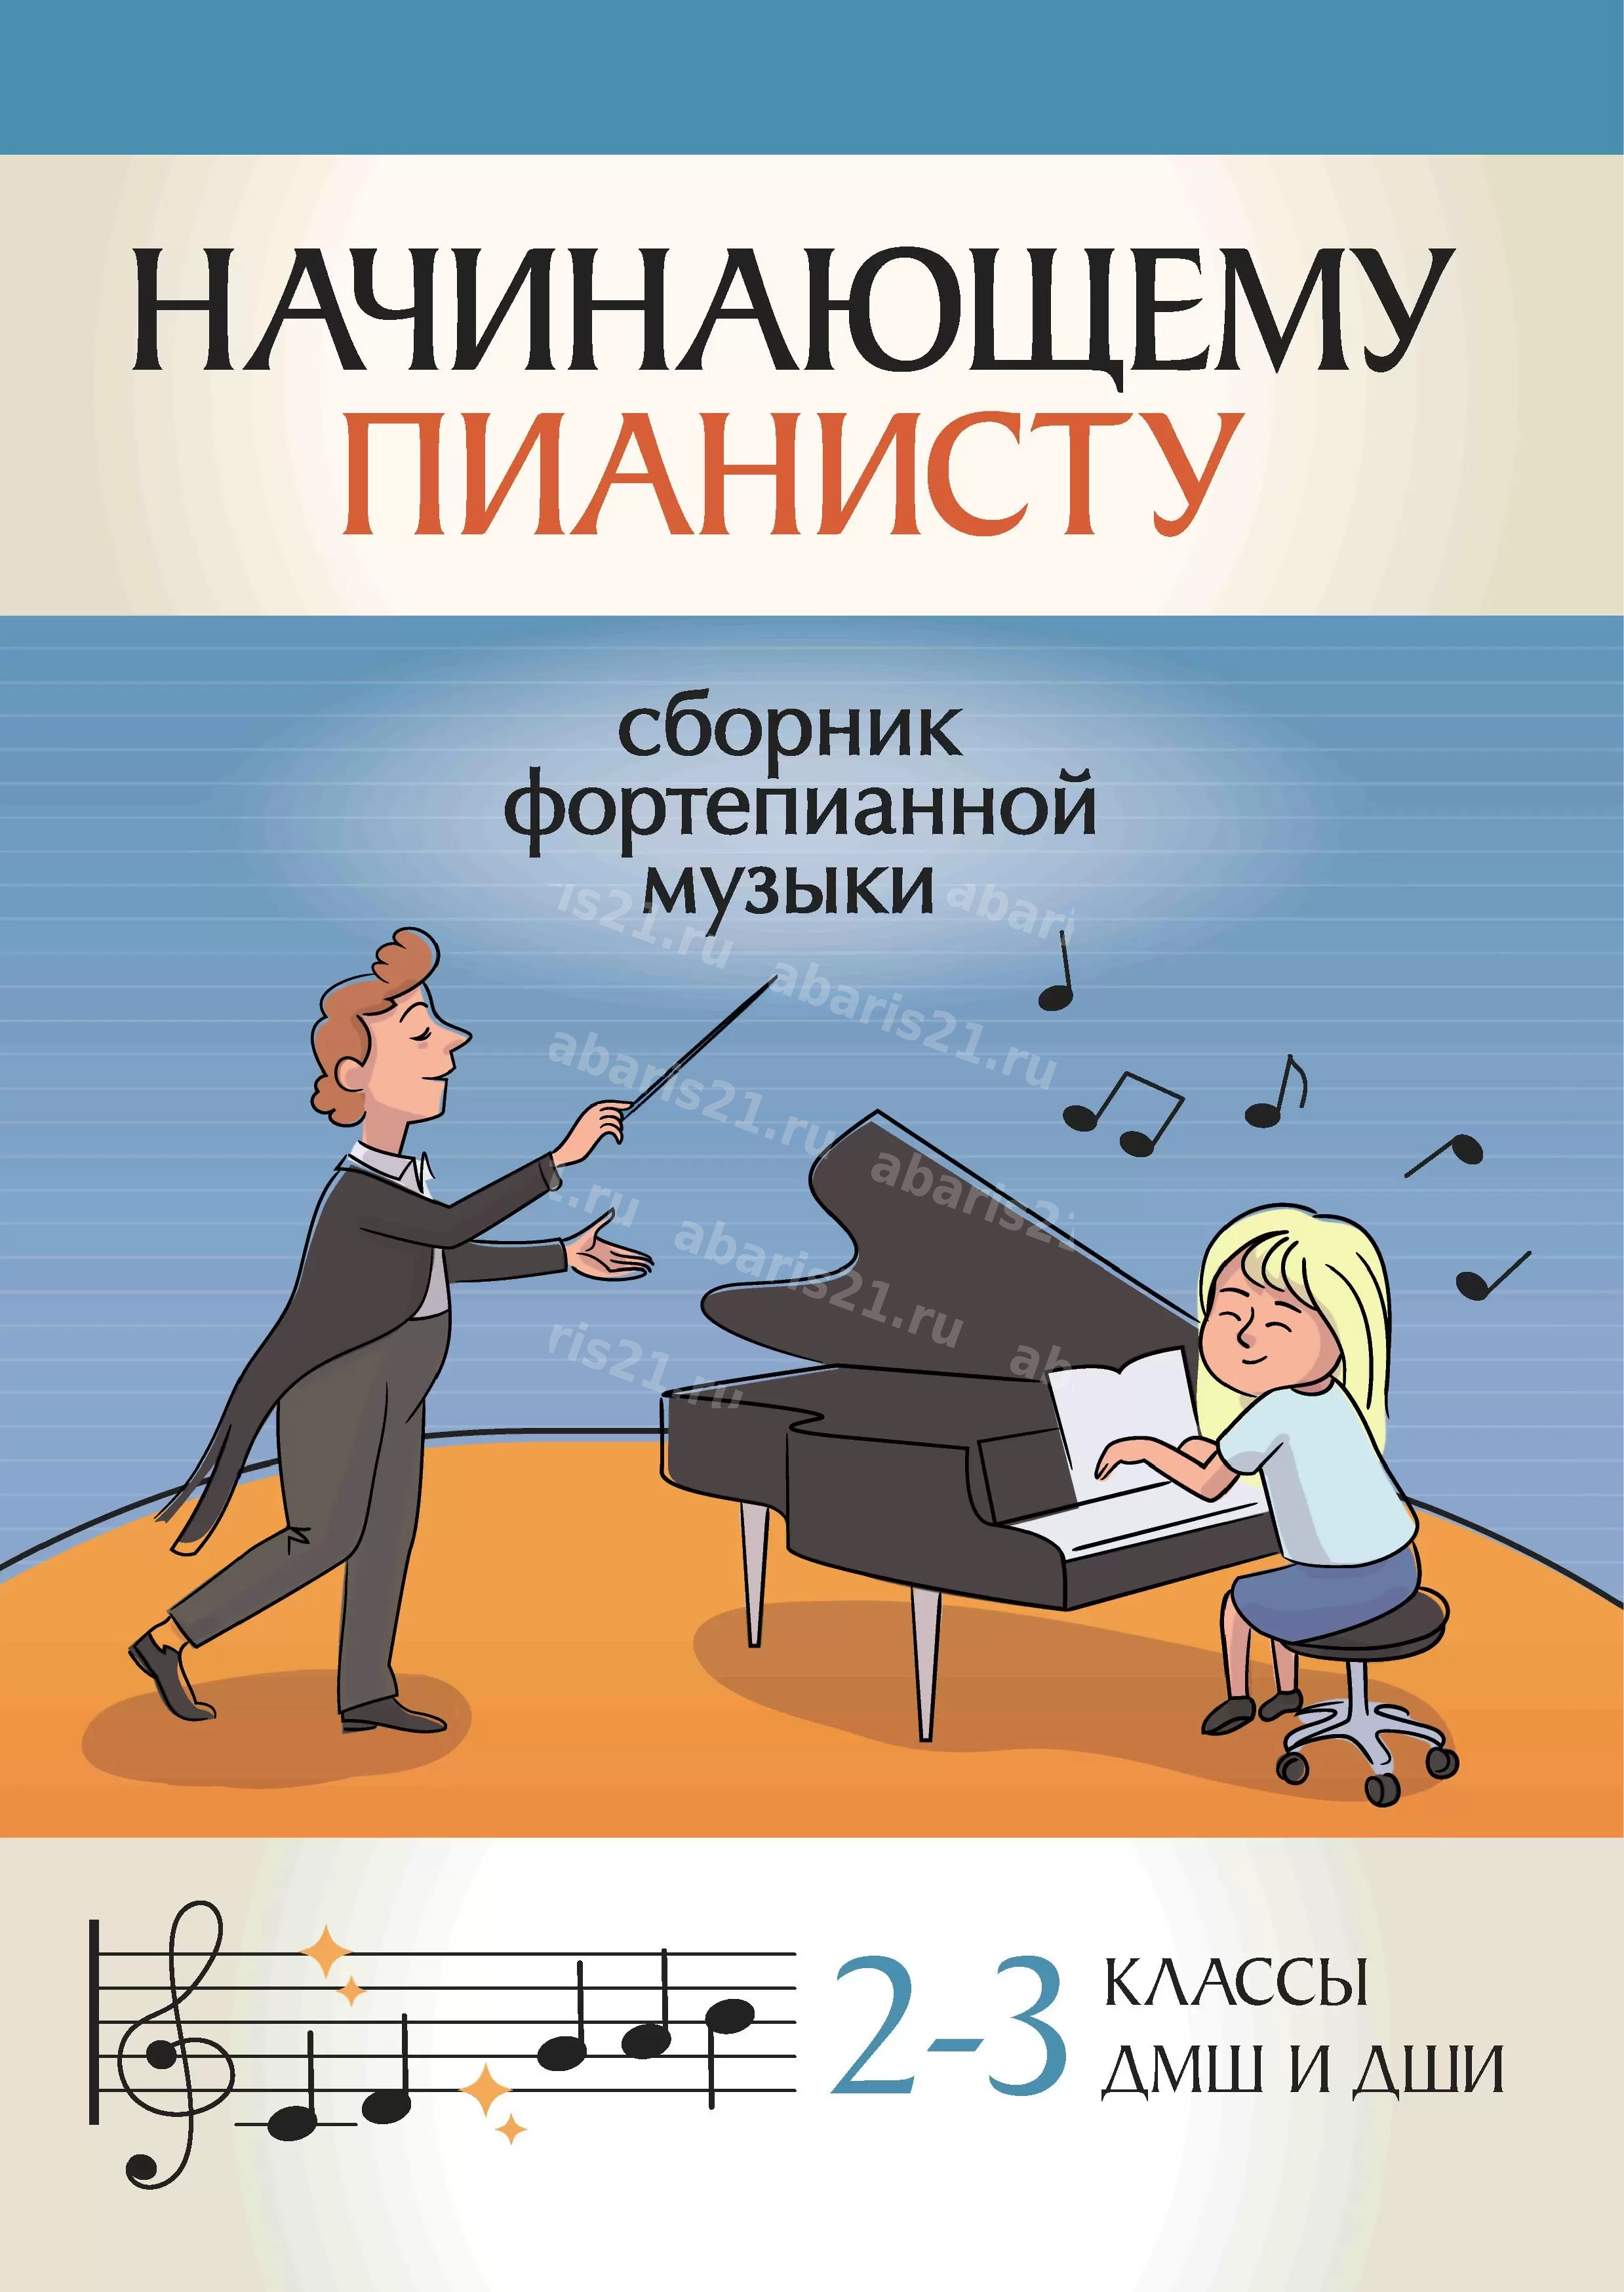 Начинающему пианисту: сборник фортепианной музыки: 2-3 классы детских музыкальных школ и детских школ искусств